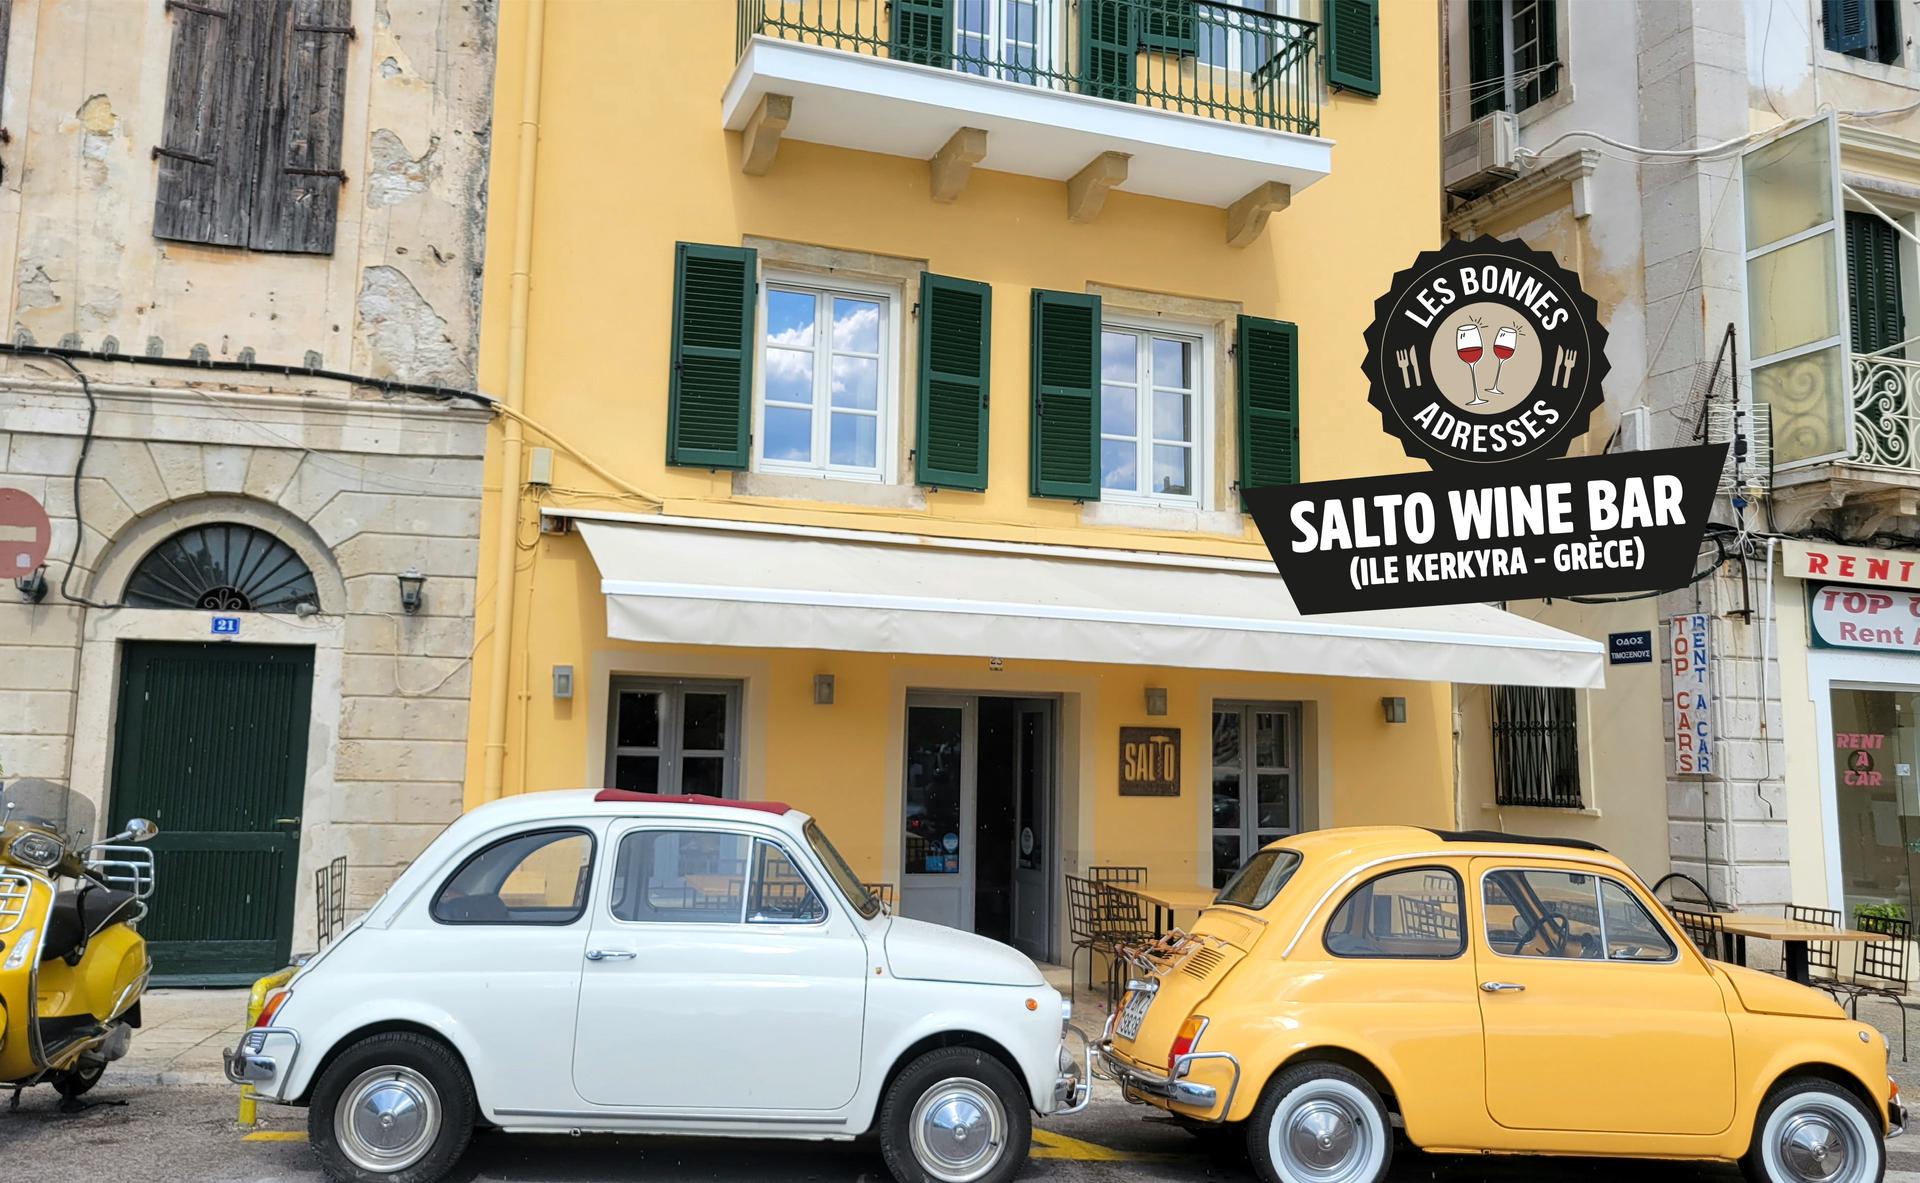 Salto wine bar : le bar à vin incontournable de Corfou